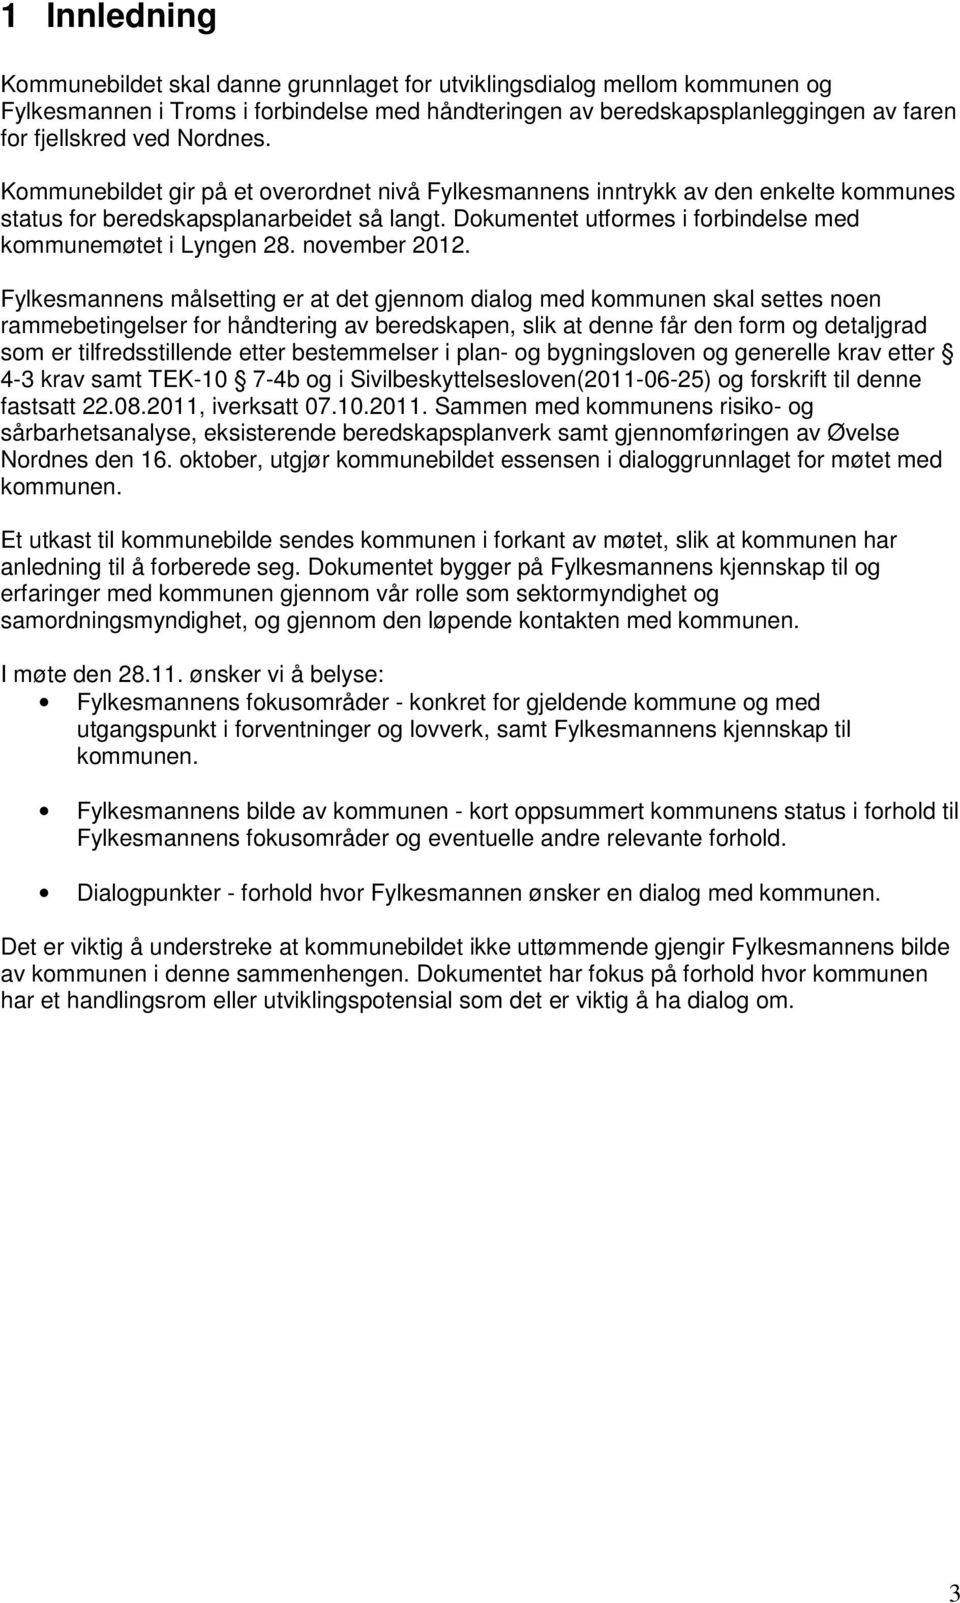 Dokumentet utformes i forbindelse med kommunemøtet i Lyngen 28. november 2012.